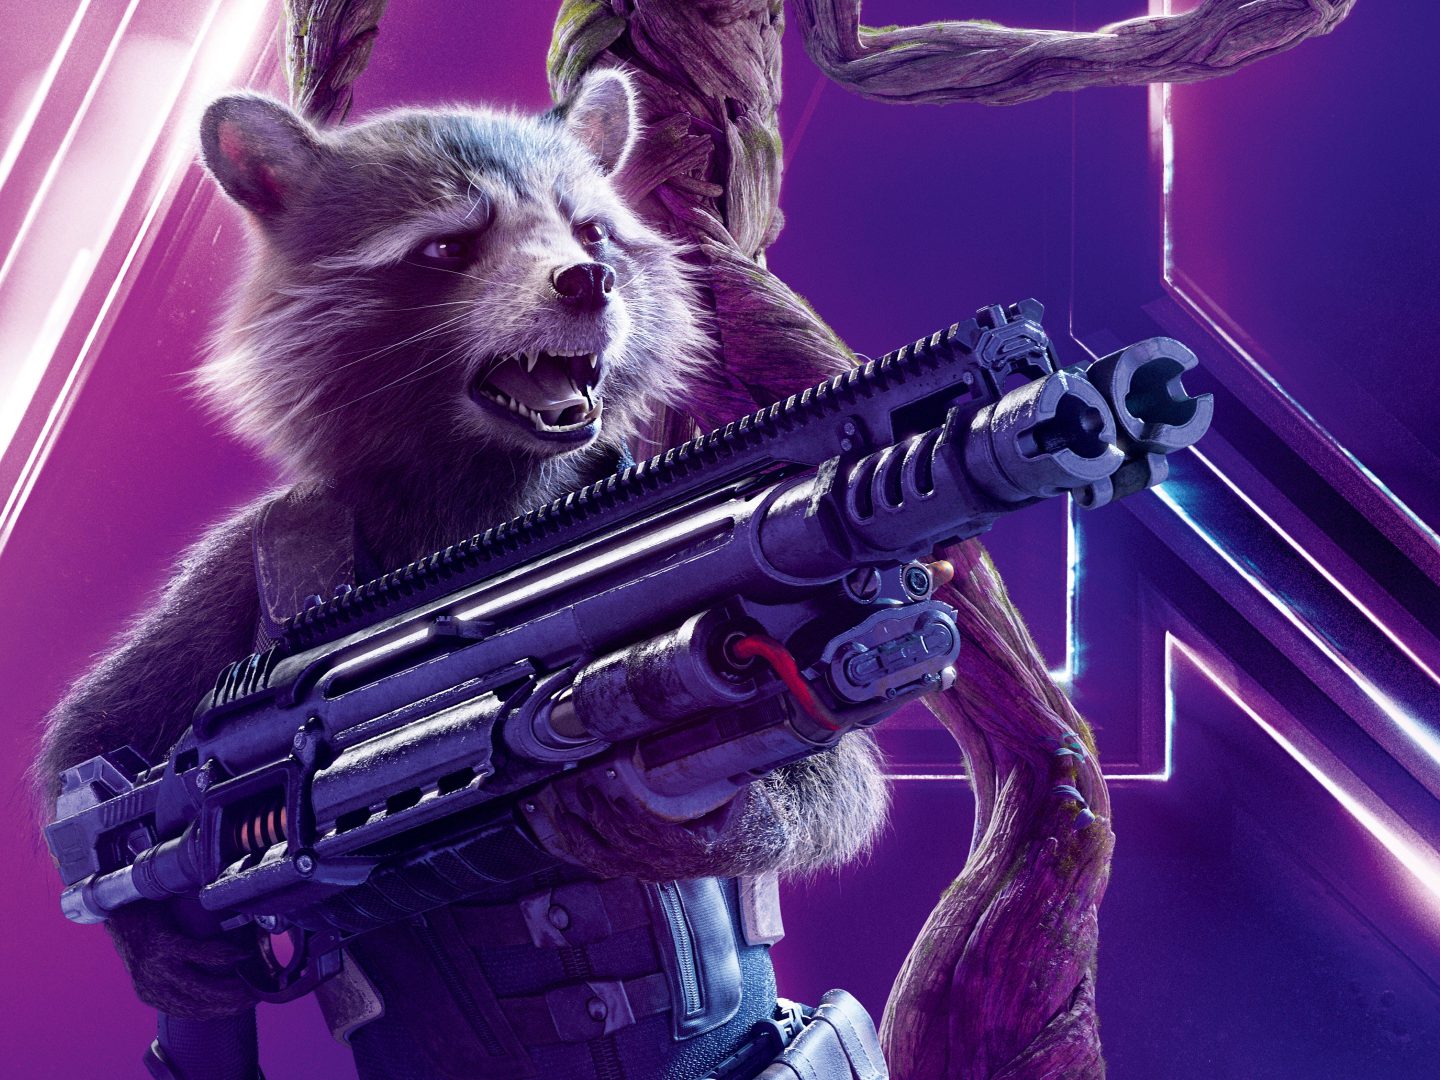 Avengers: Infinity War (2018) Rocket Raccoon 8K Ultra HD Wallpaper